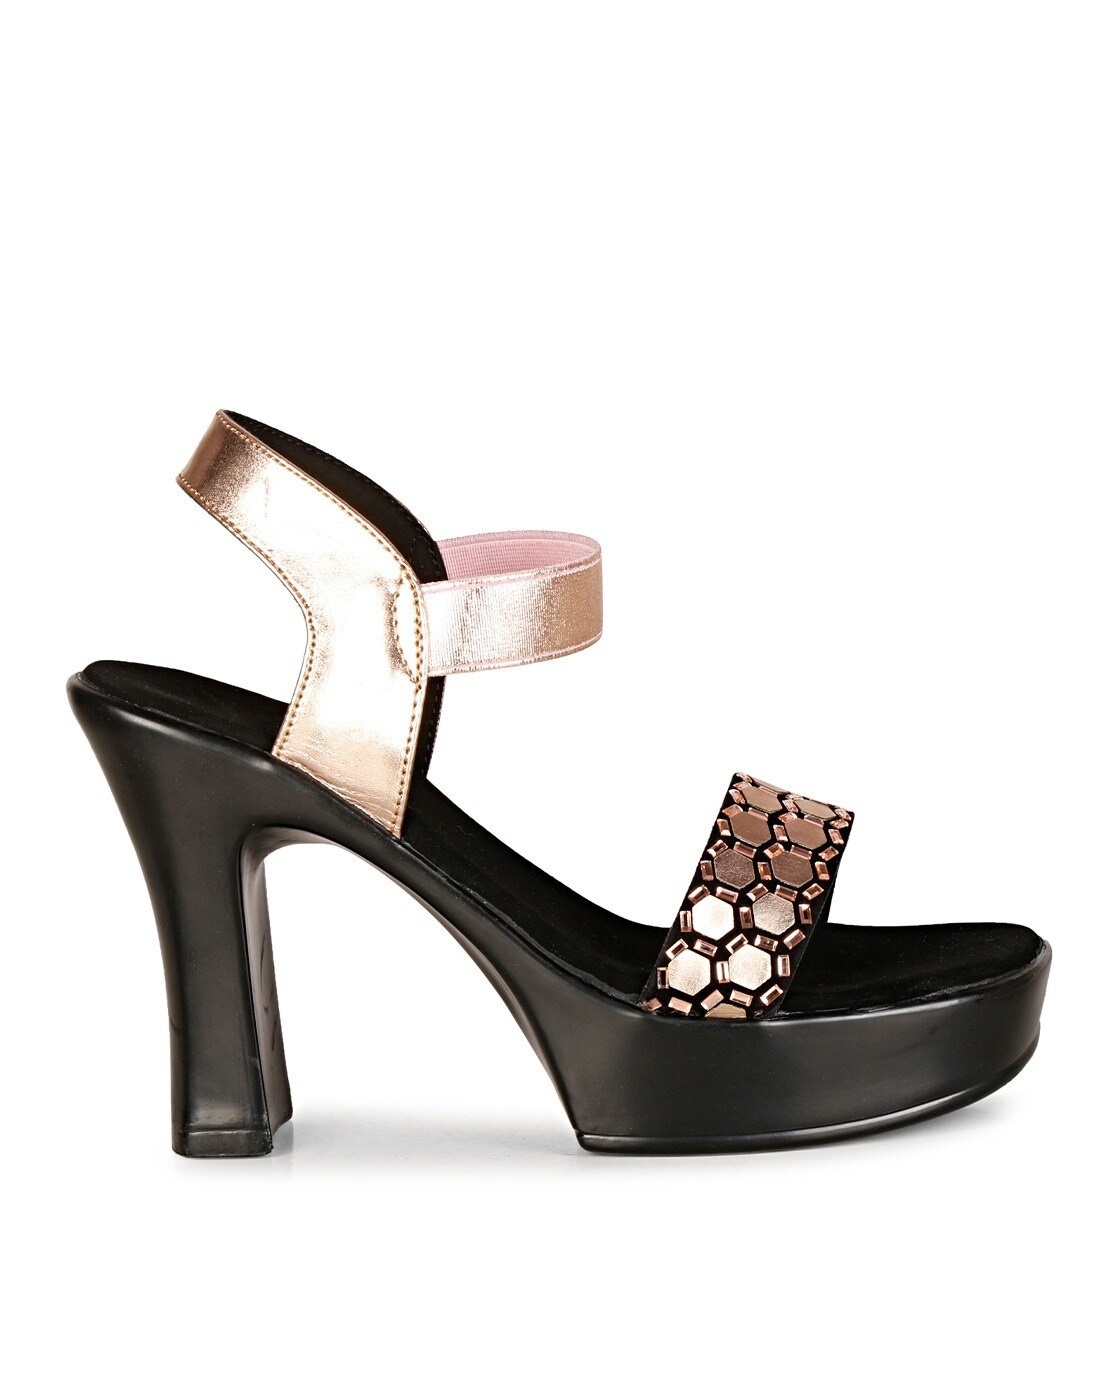 Chloe Shoes in Medium Heel. Espadrille Wedge Platform Heels. Handmade in  Argentina - Etsy